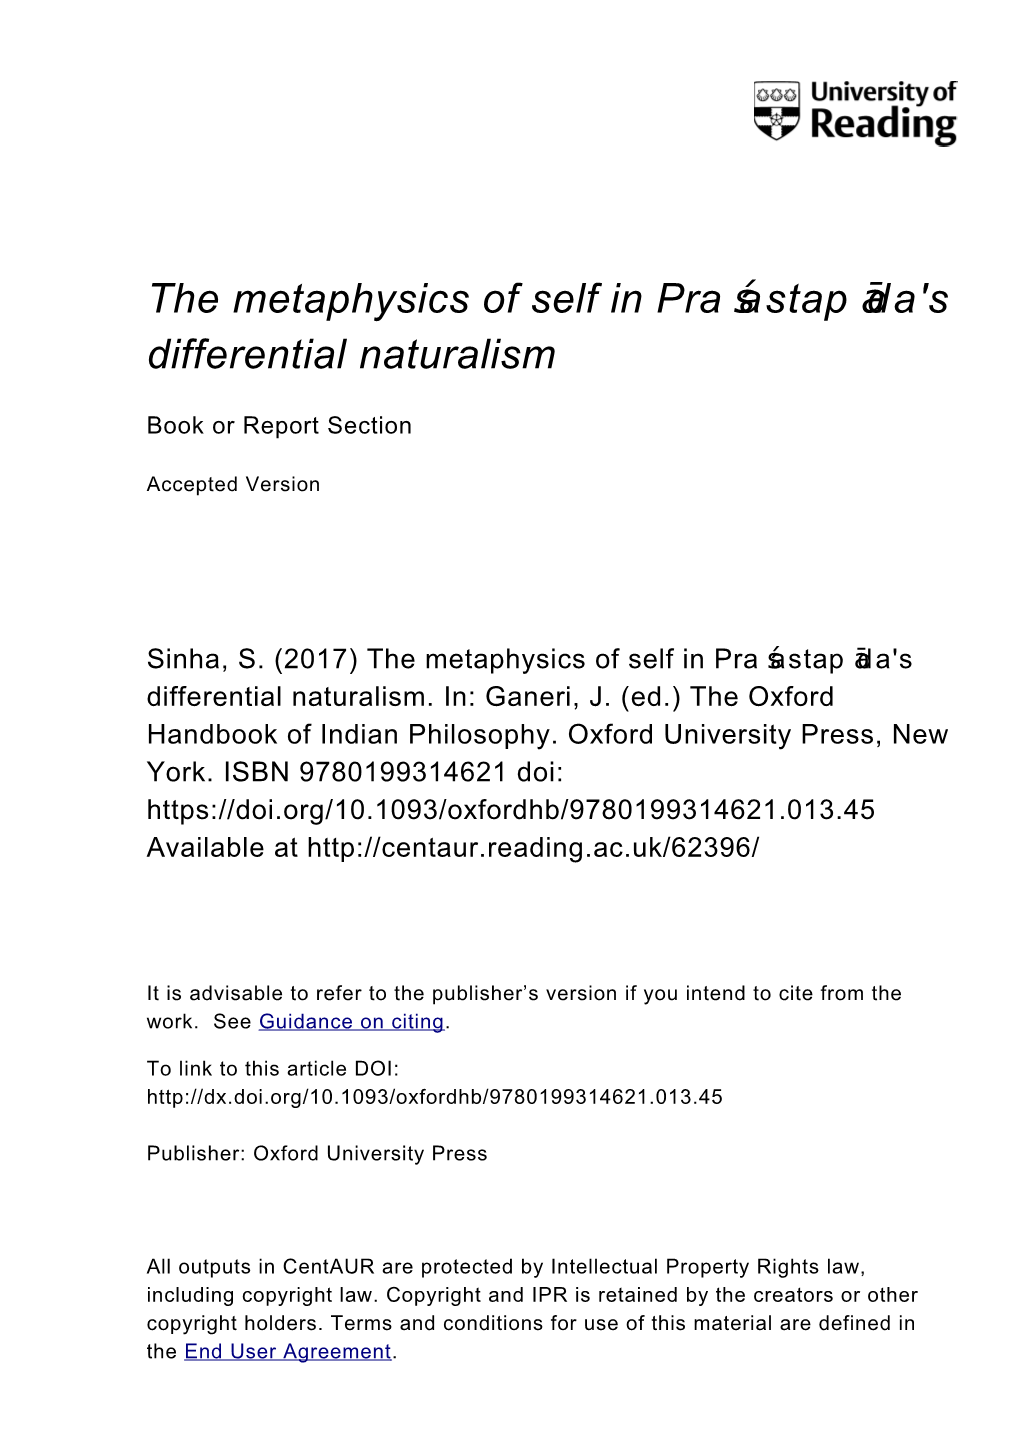 The Metaphysics of Self in Pra Astap Da's Ś Ā Differential Naturalism